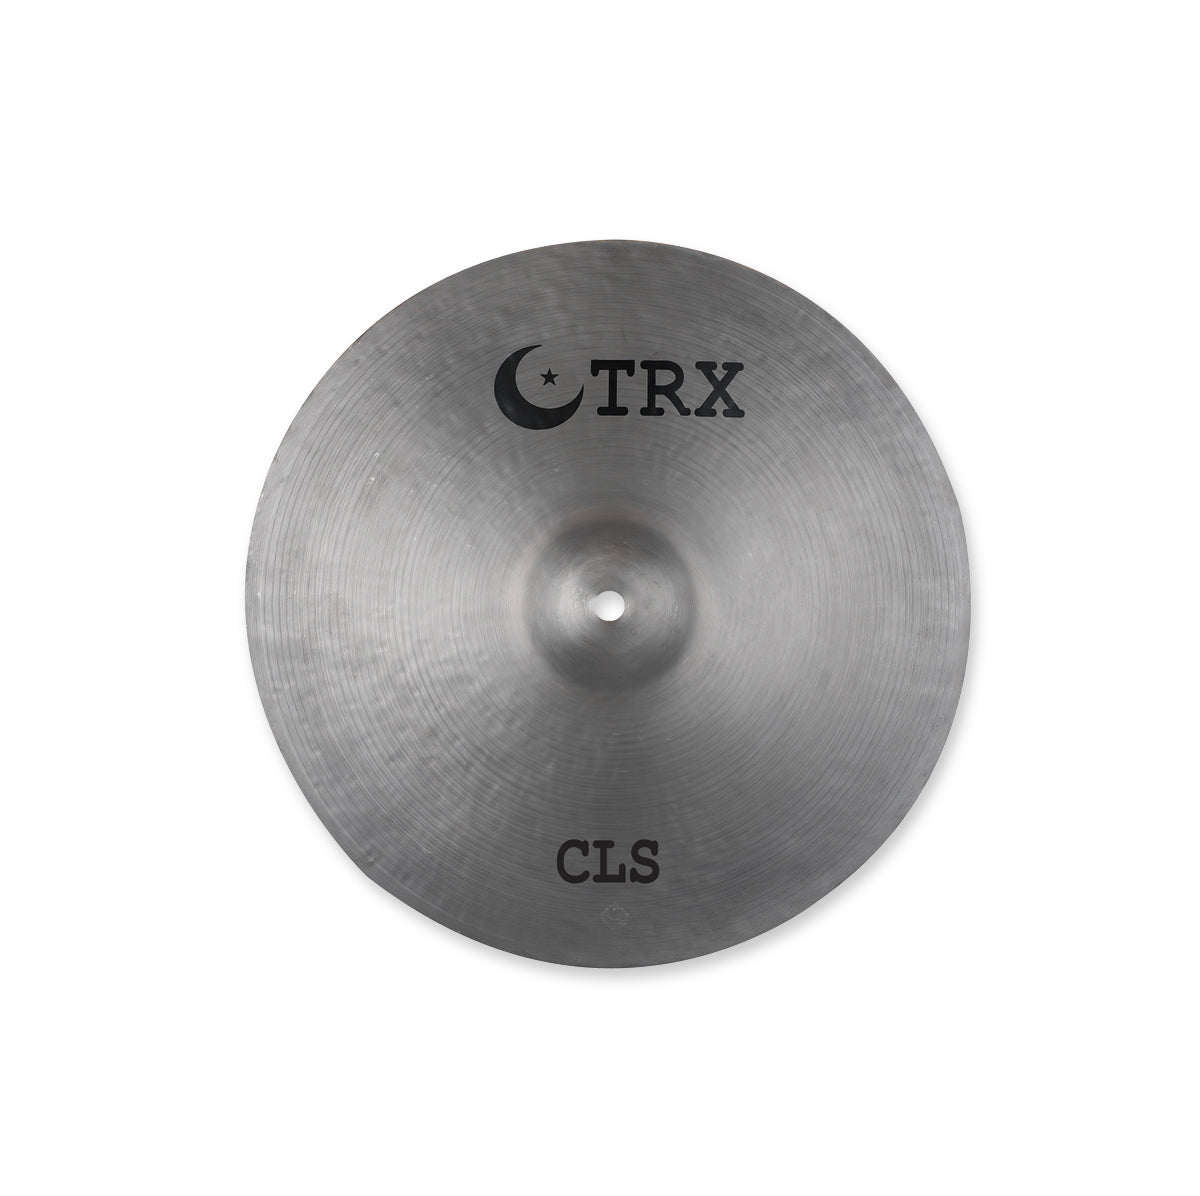 TRX Cymbals CLS Series Hi Hats